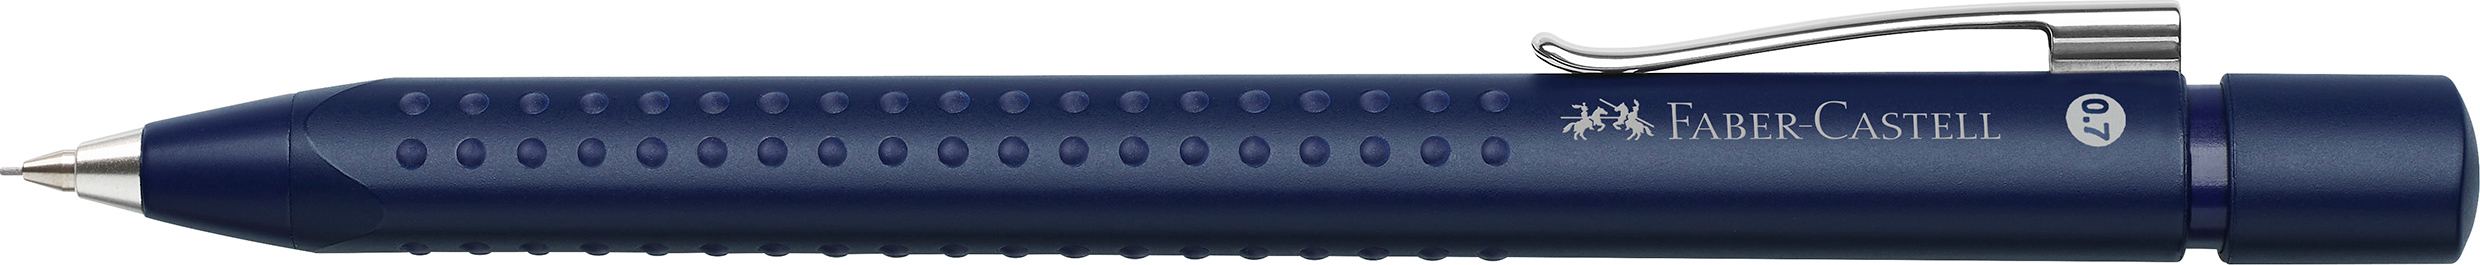 FABER-CASTELL Porte-mine GRIP 2011 131263 bleu class. Gomme 0.7mm bleu class. Gomme 0.7mm